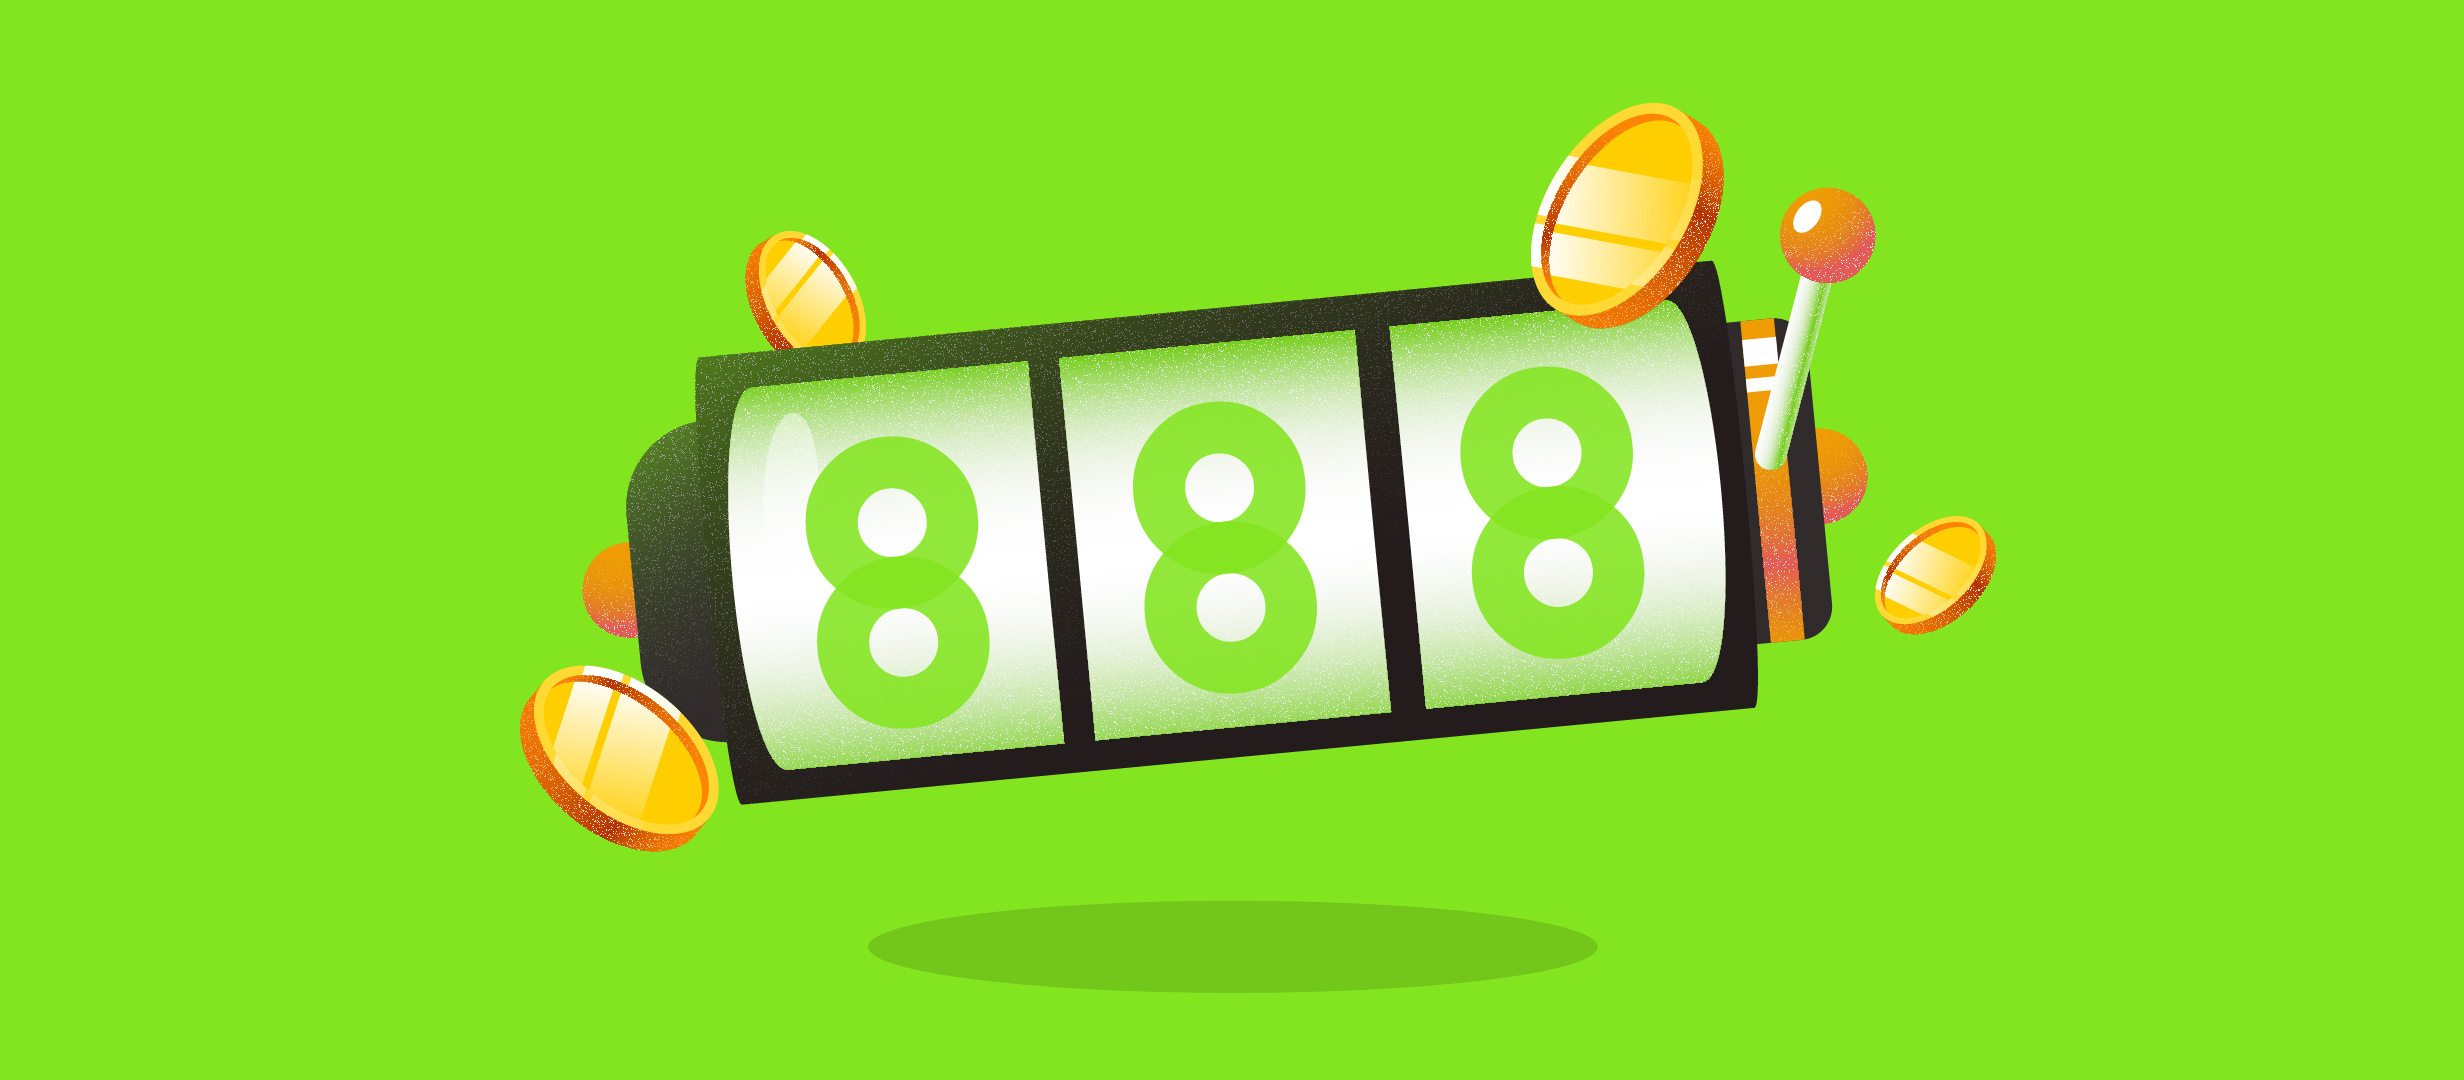 888 Casino - Jocuri pe care le poti juca la cele mai mici mize